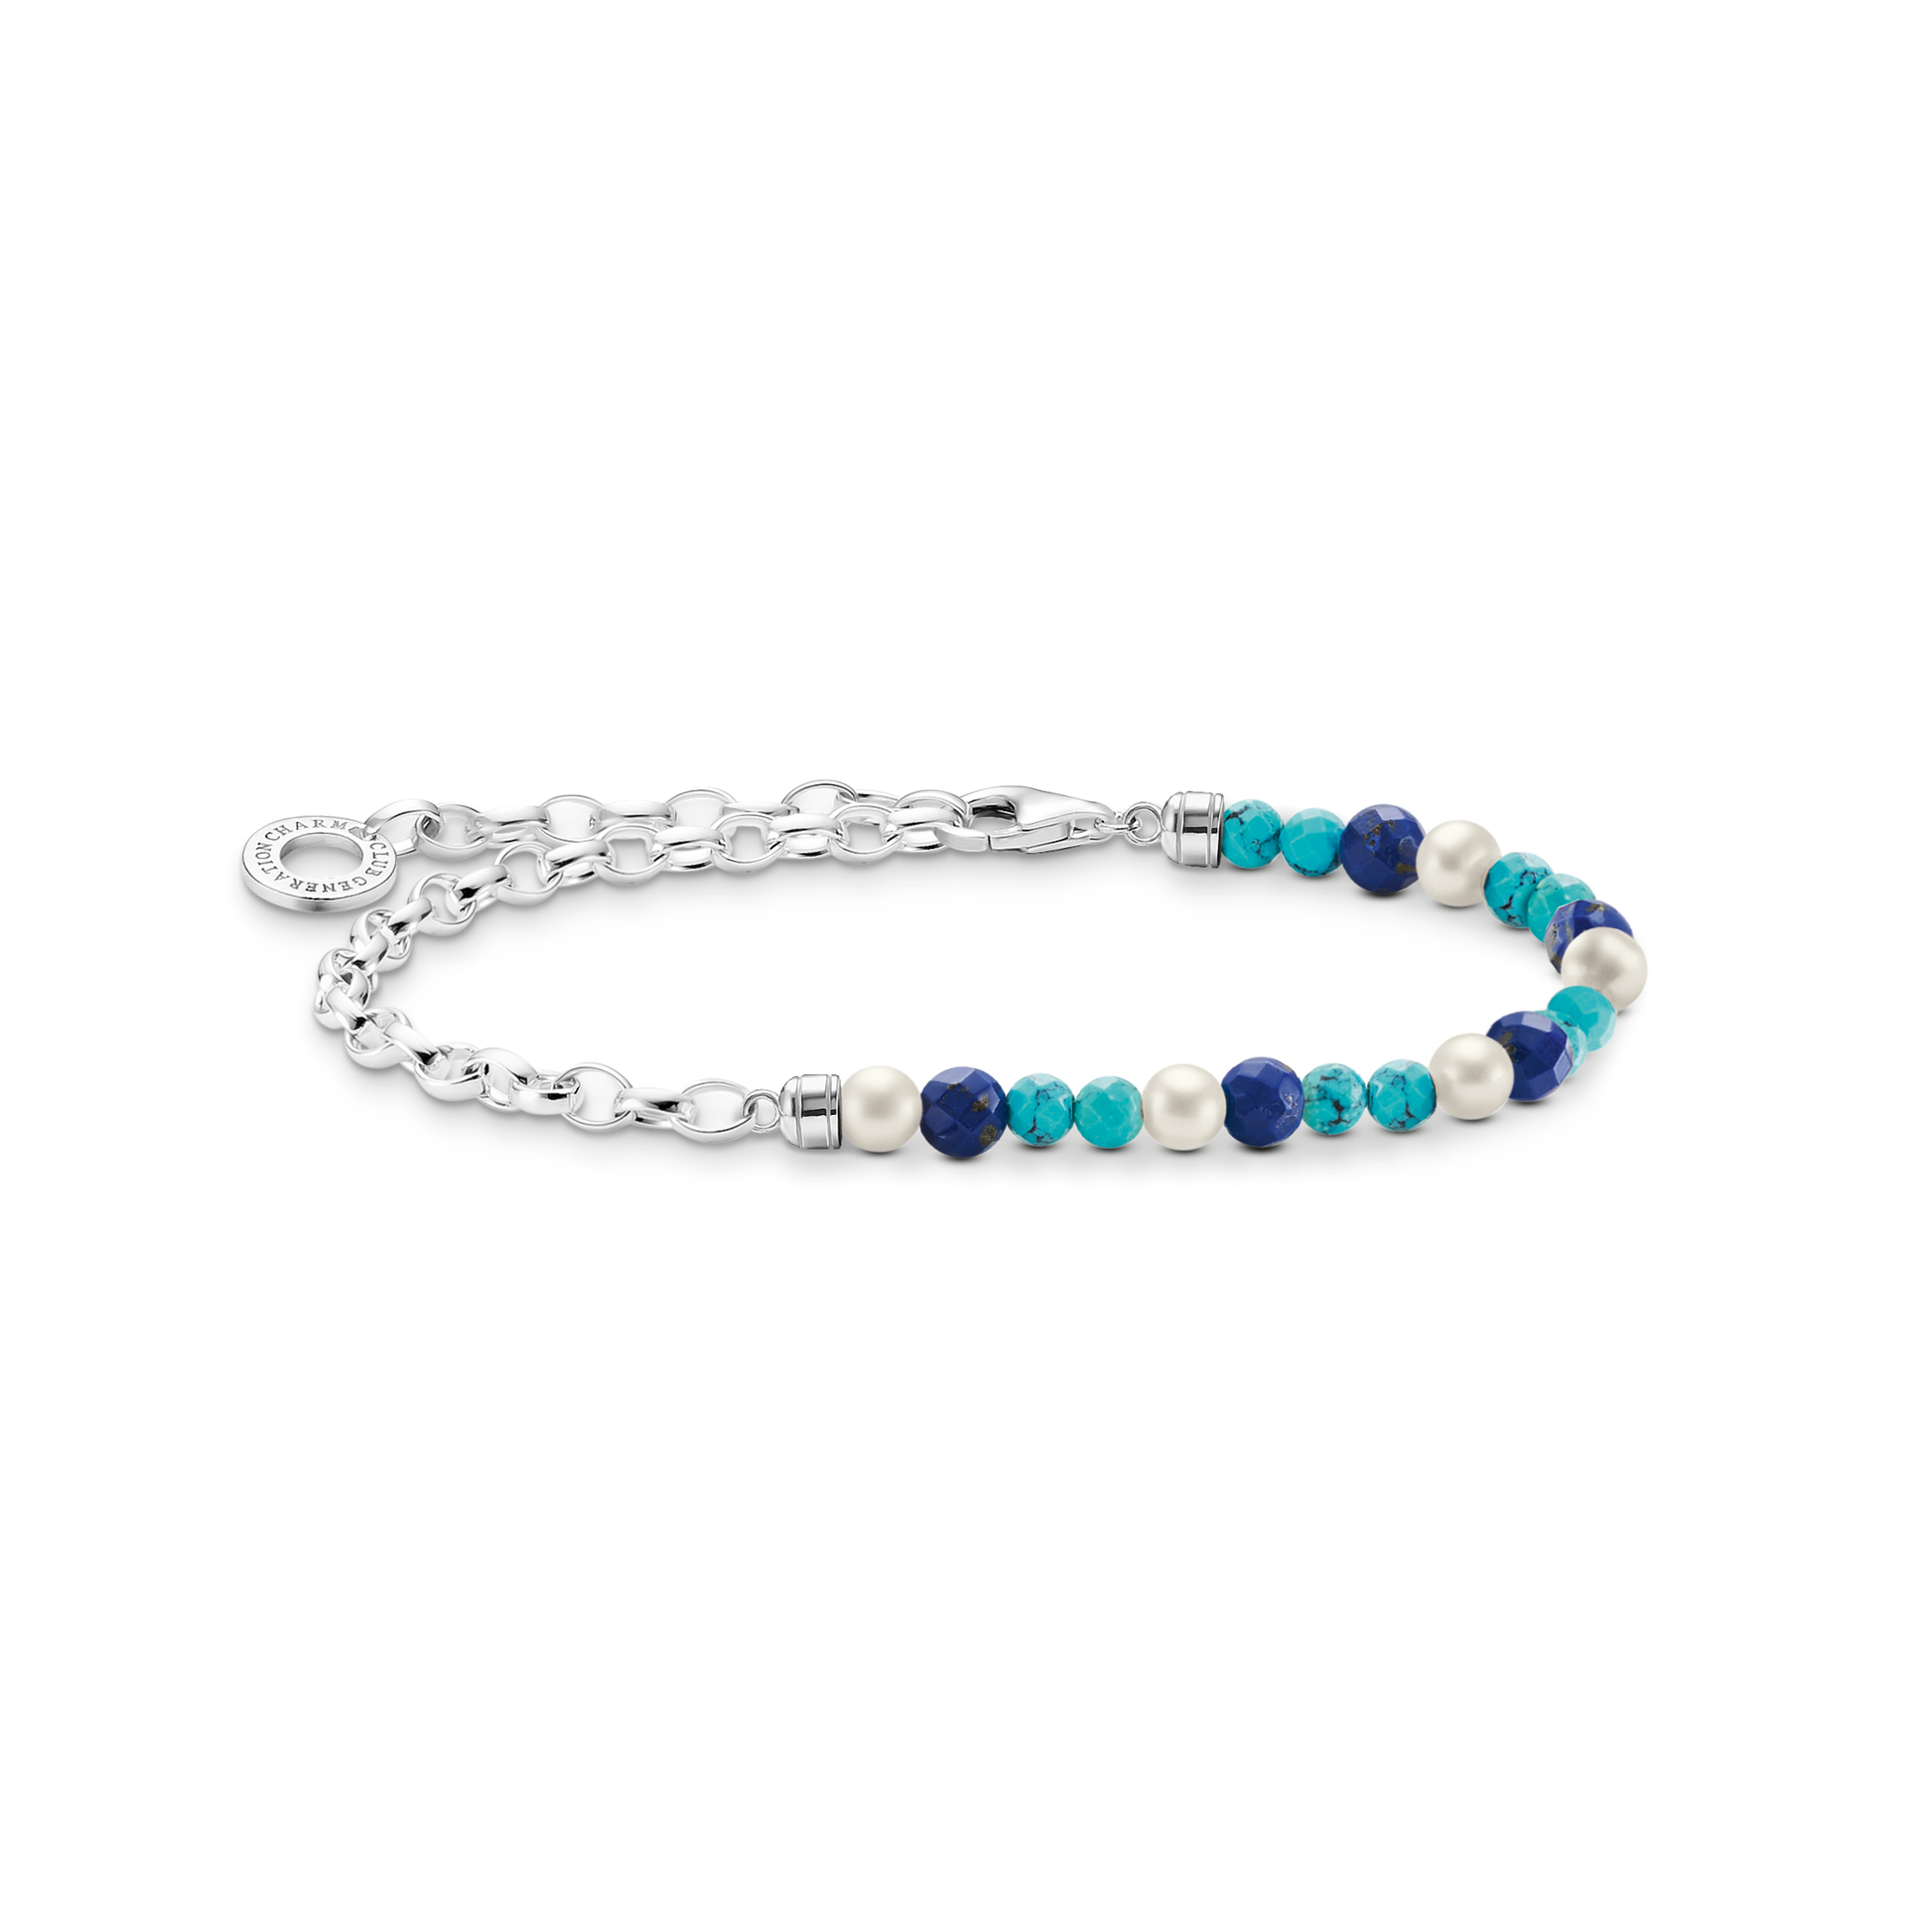 Charm-Armband mit blauen Beads, weißen Perlen - PERDONA